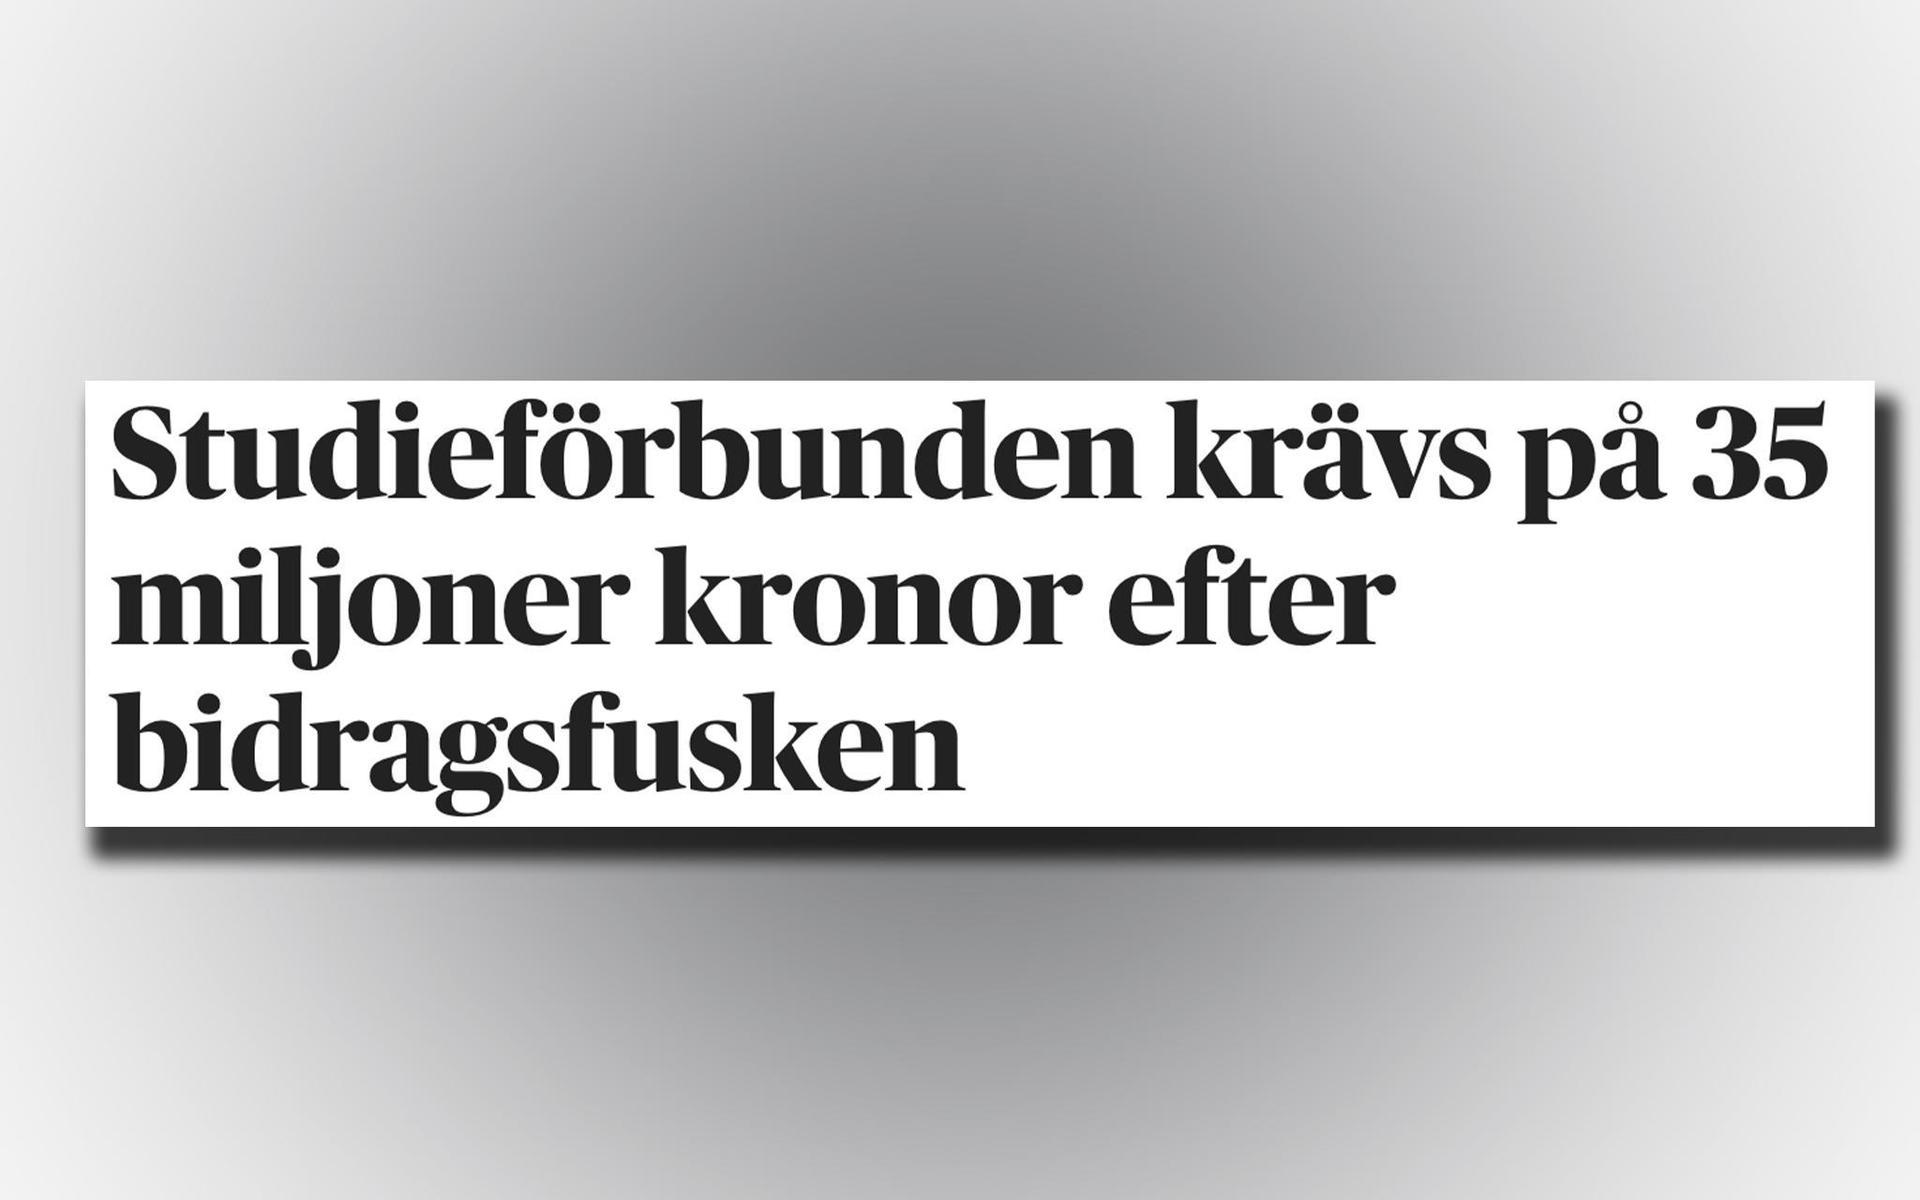 Det var tidigare i veckan som Dagens Nyheter avslöjade att de svenska studieförbunden kan komma att tvingas betala tillbaka 35 miljoner kronor. 